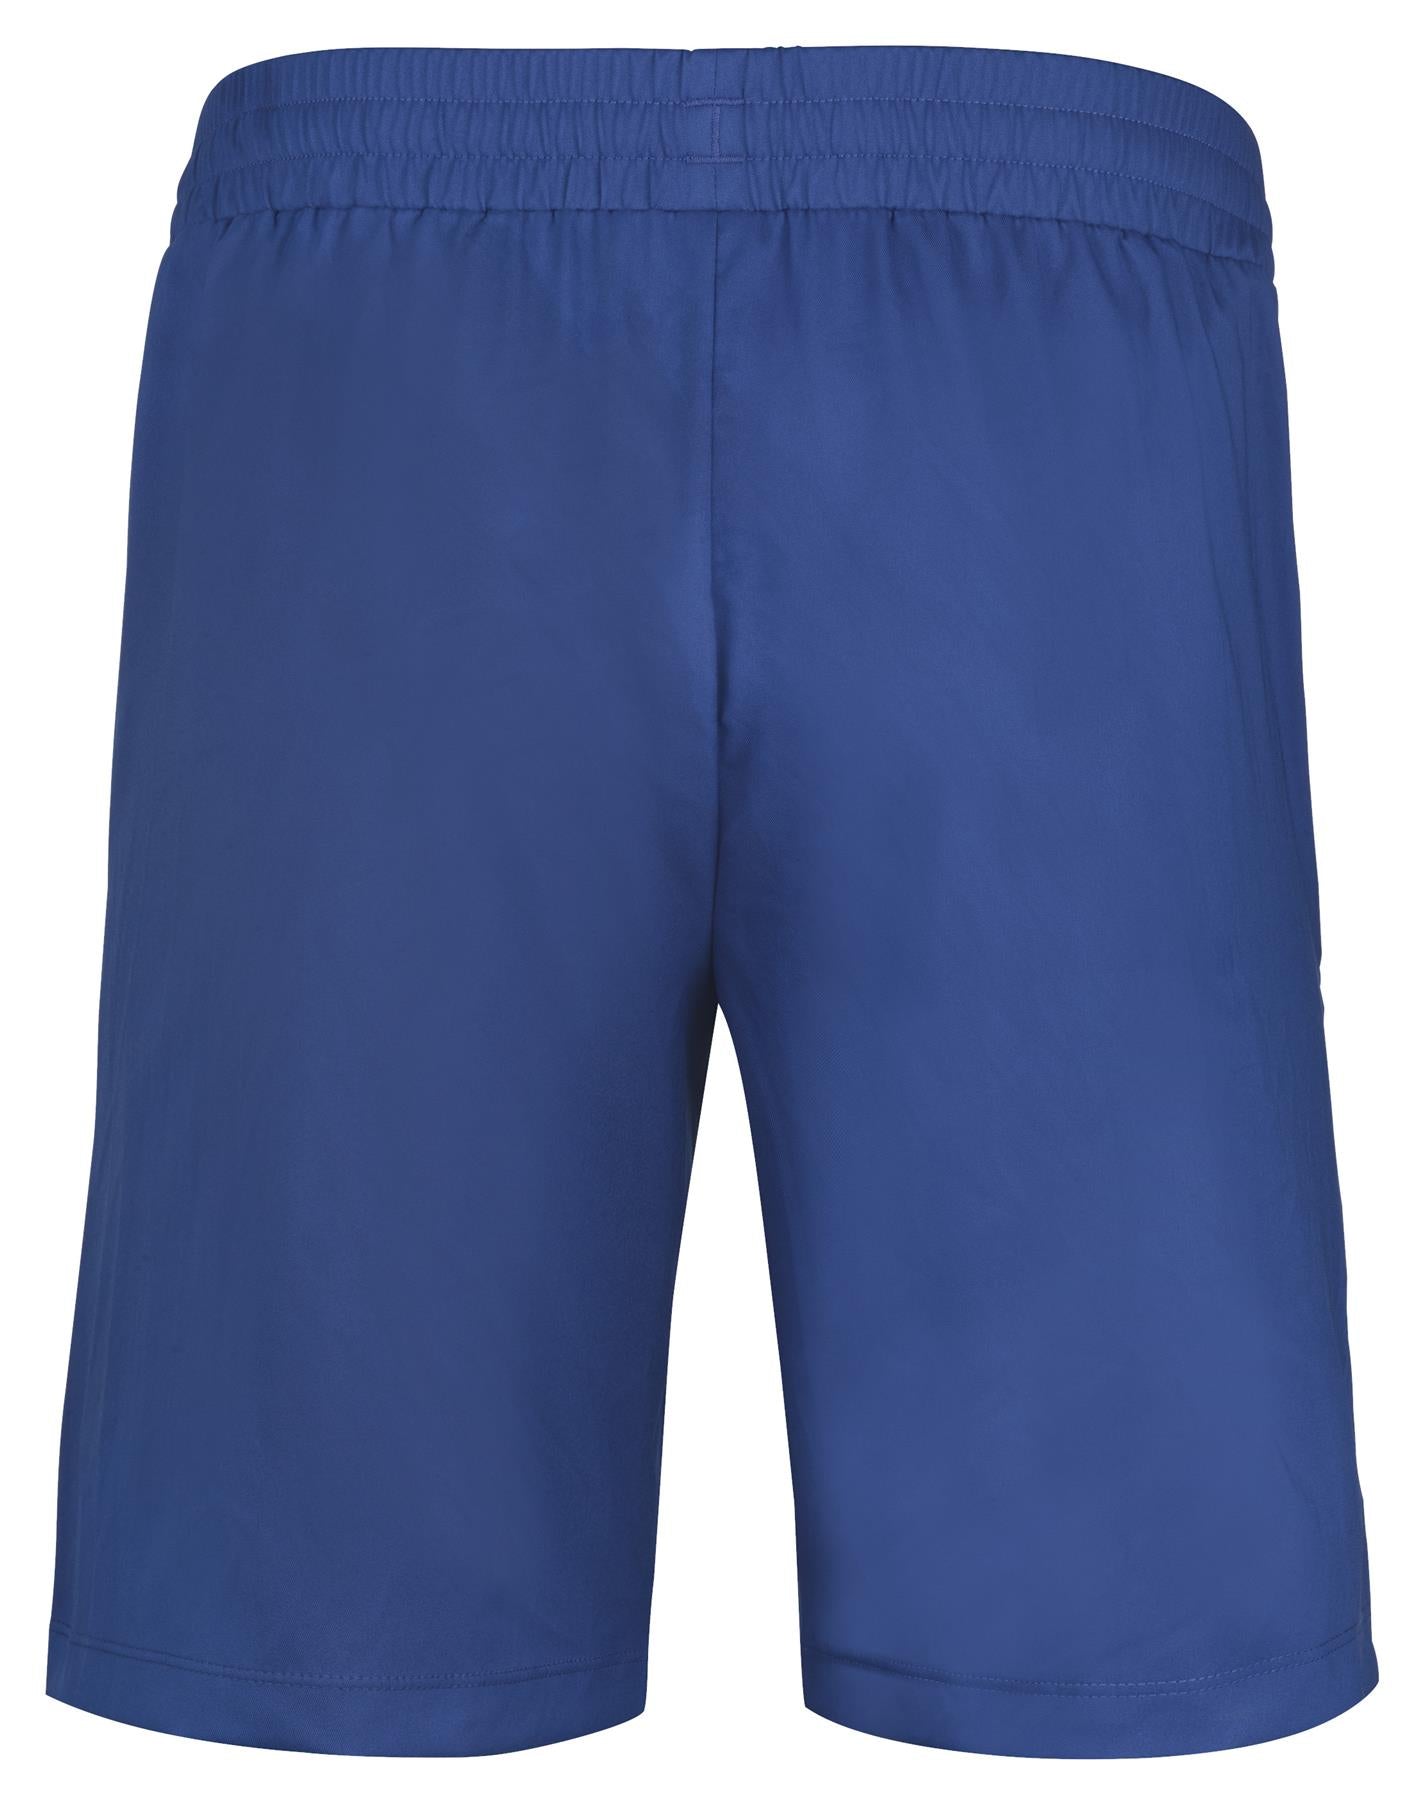 Babolat Play Mens Tennis Shorts - Sodalite Blue - Back